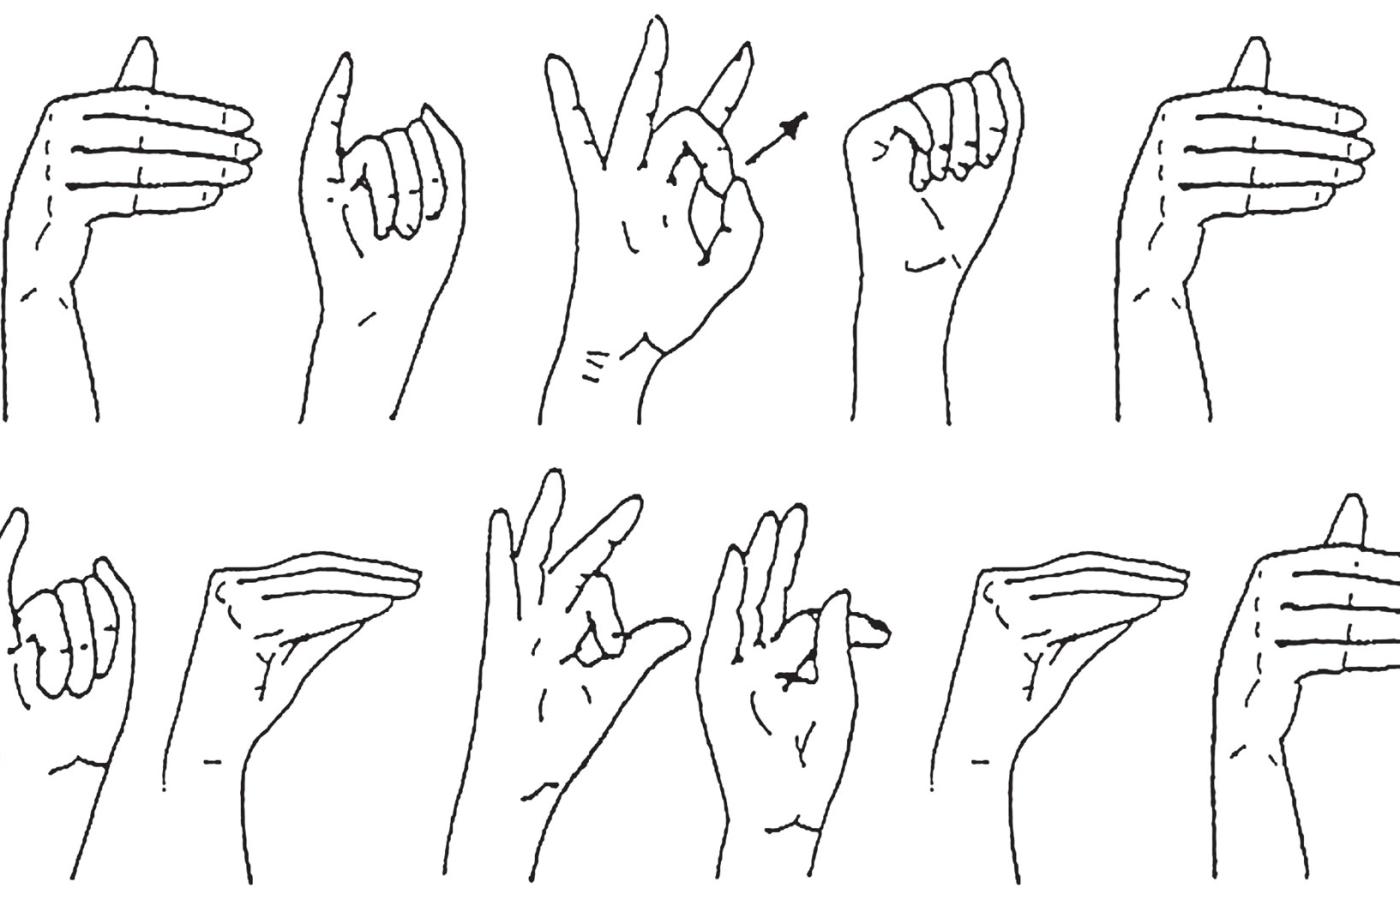 Tytuł artykułu „Migam, więc jestem” w języku migowym